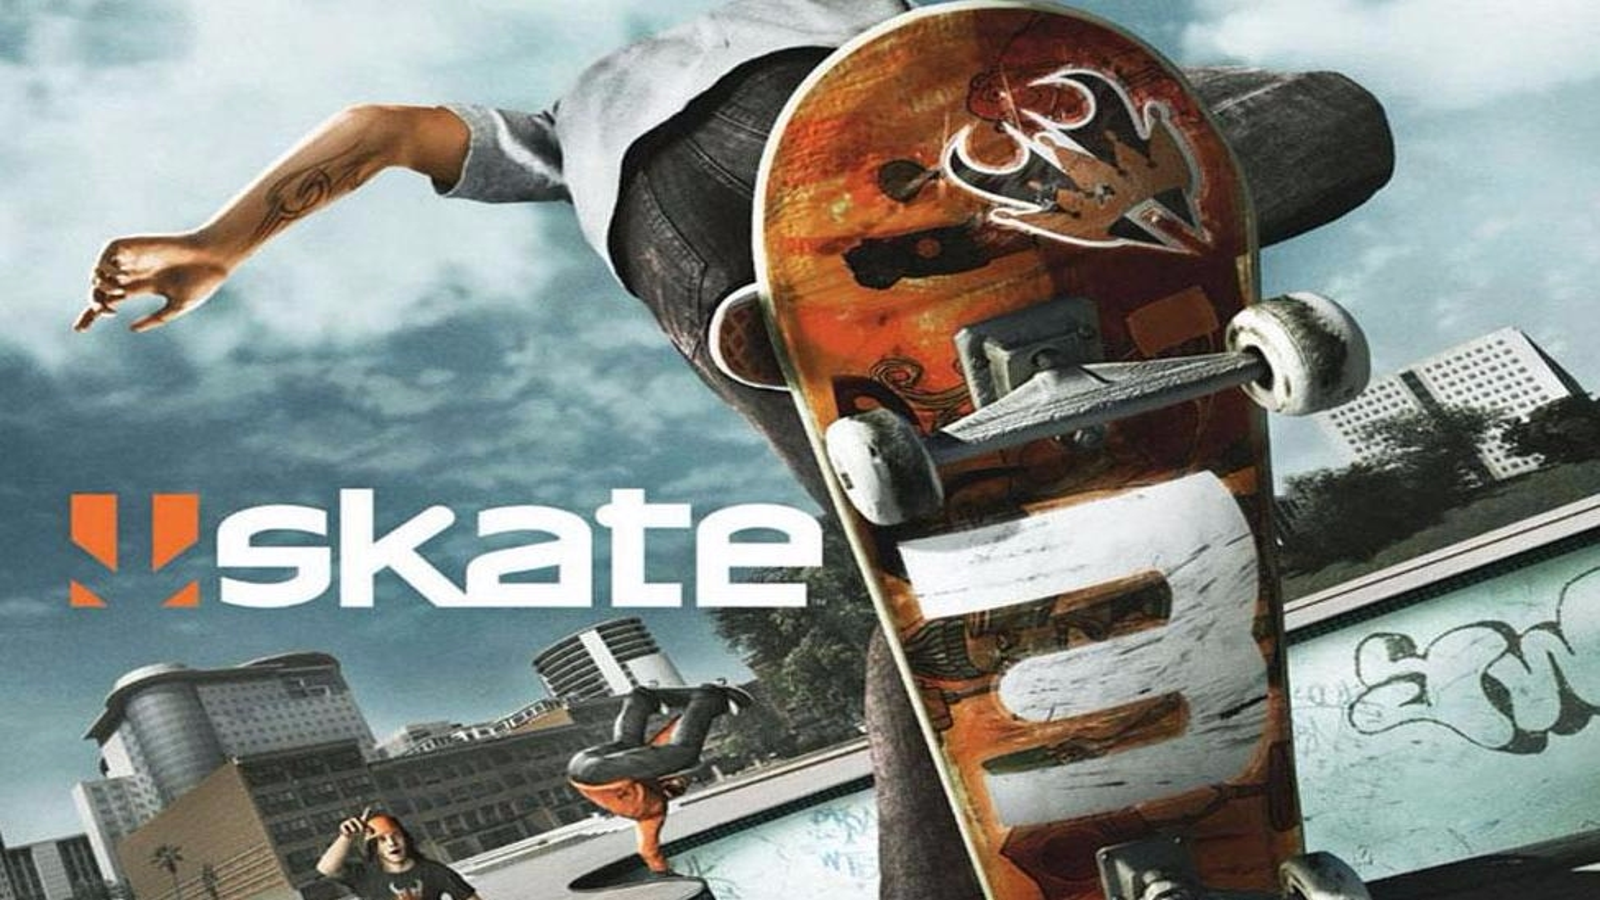 Jogo Skate 3 - Xbox 360 Retrocompatível